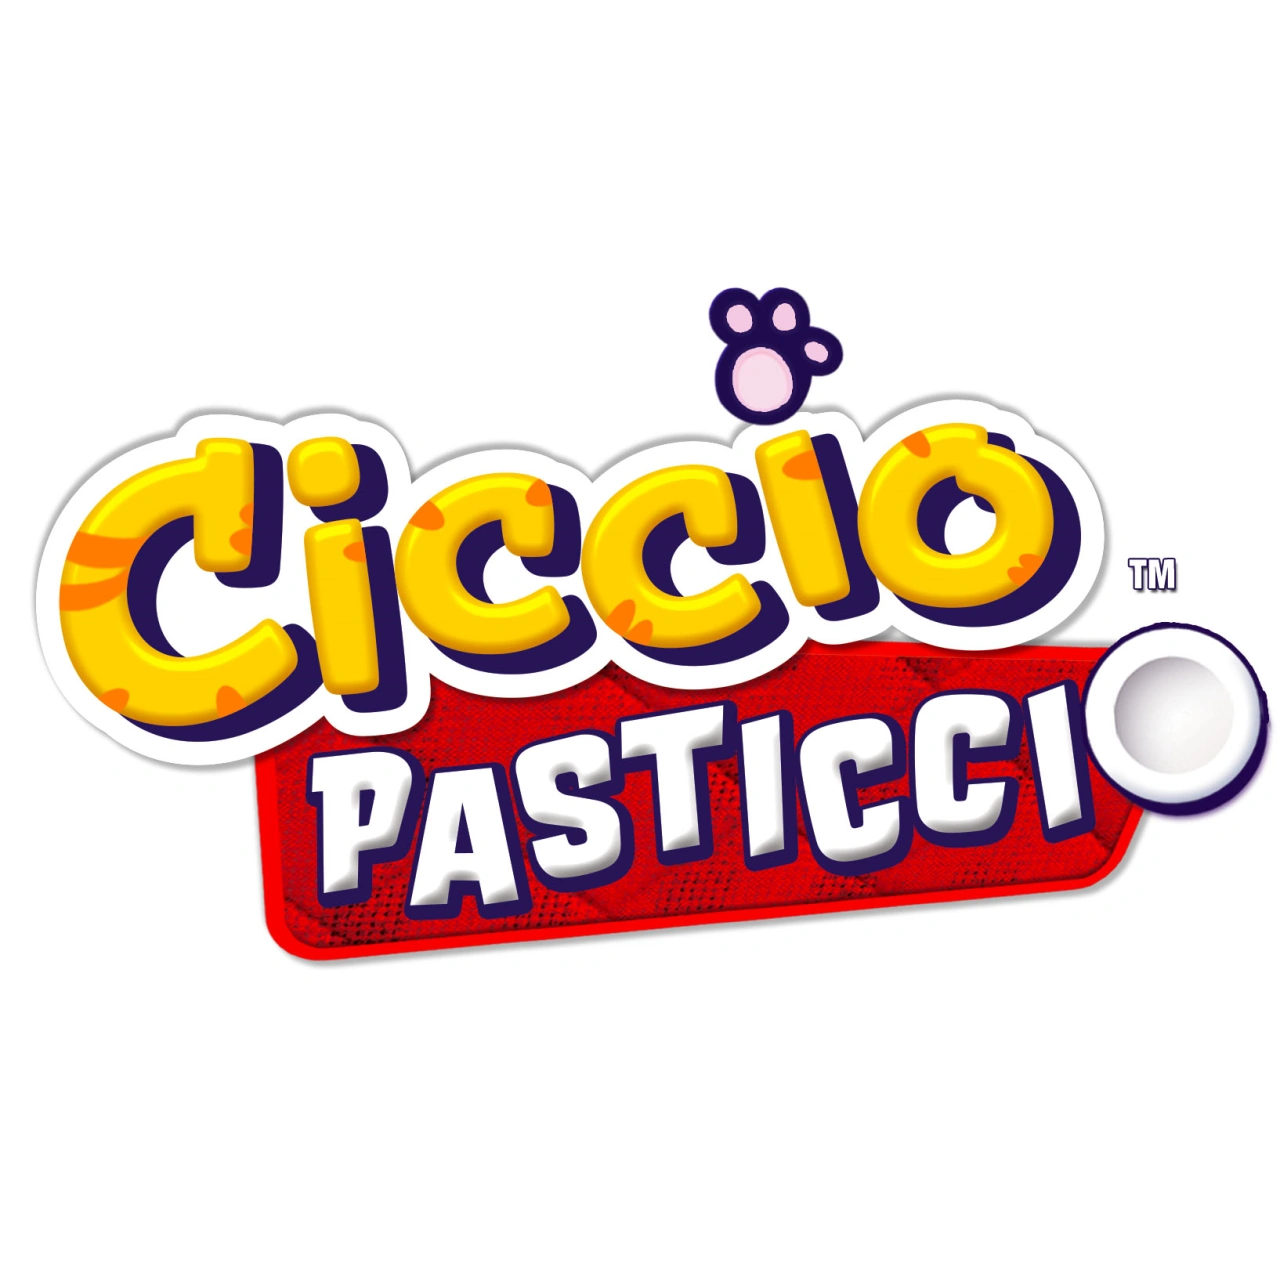 Ciccio Pasticcio - Giocheria Aldeghi